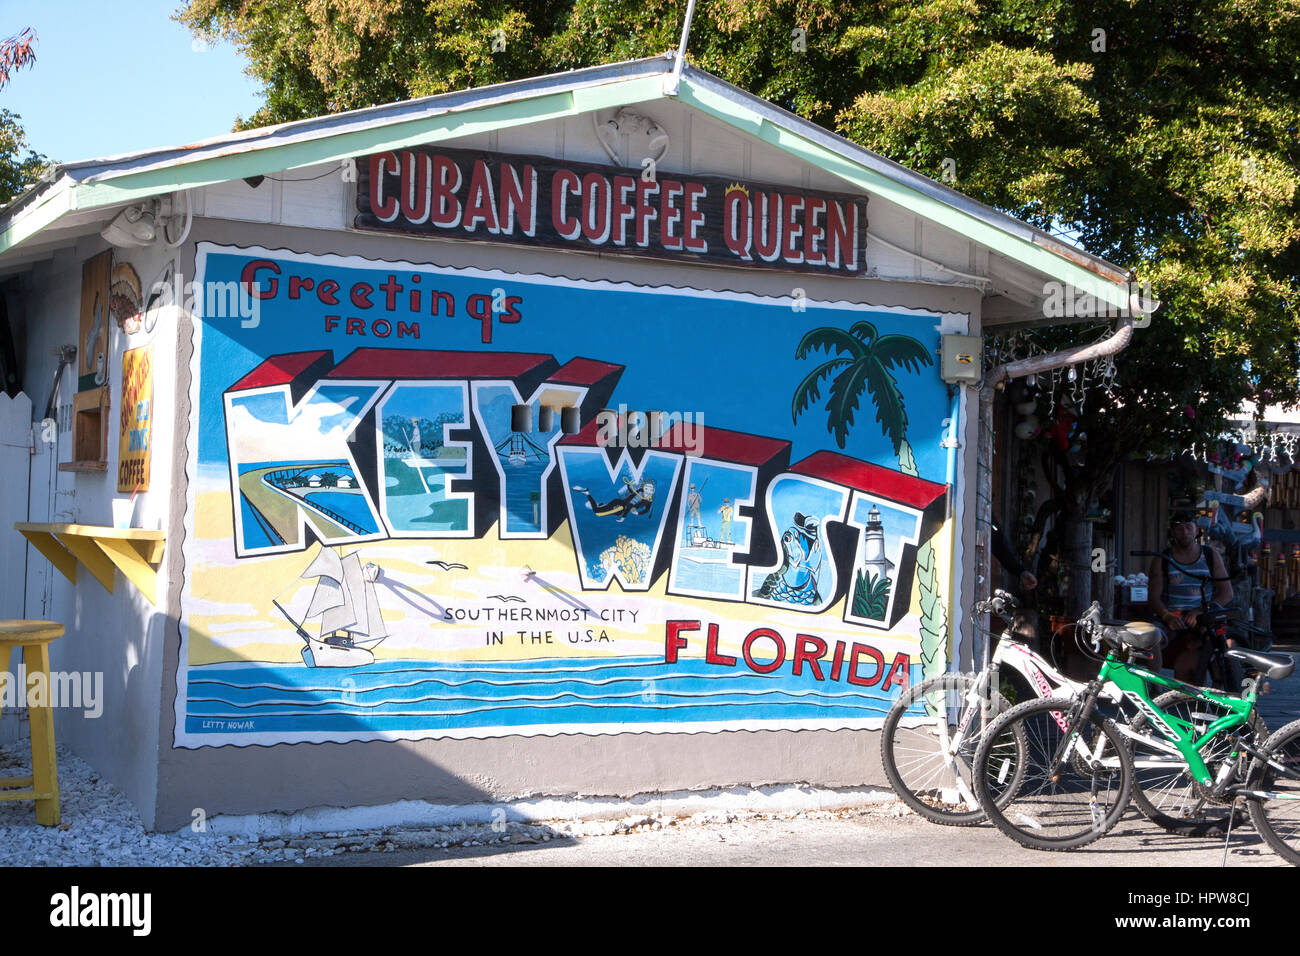 Kubanische Coffee Queen Restaurant in Key West, Florida. Stockfoto